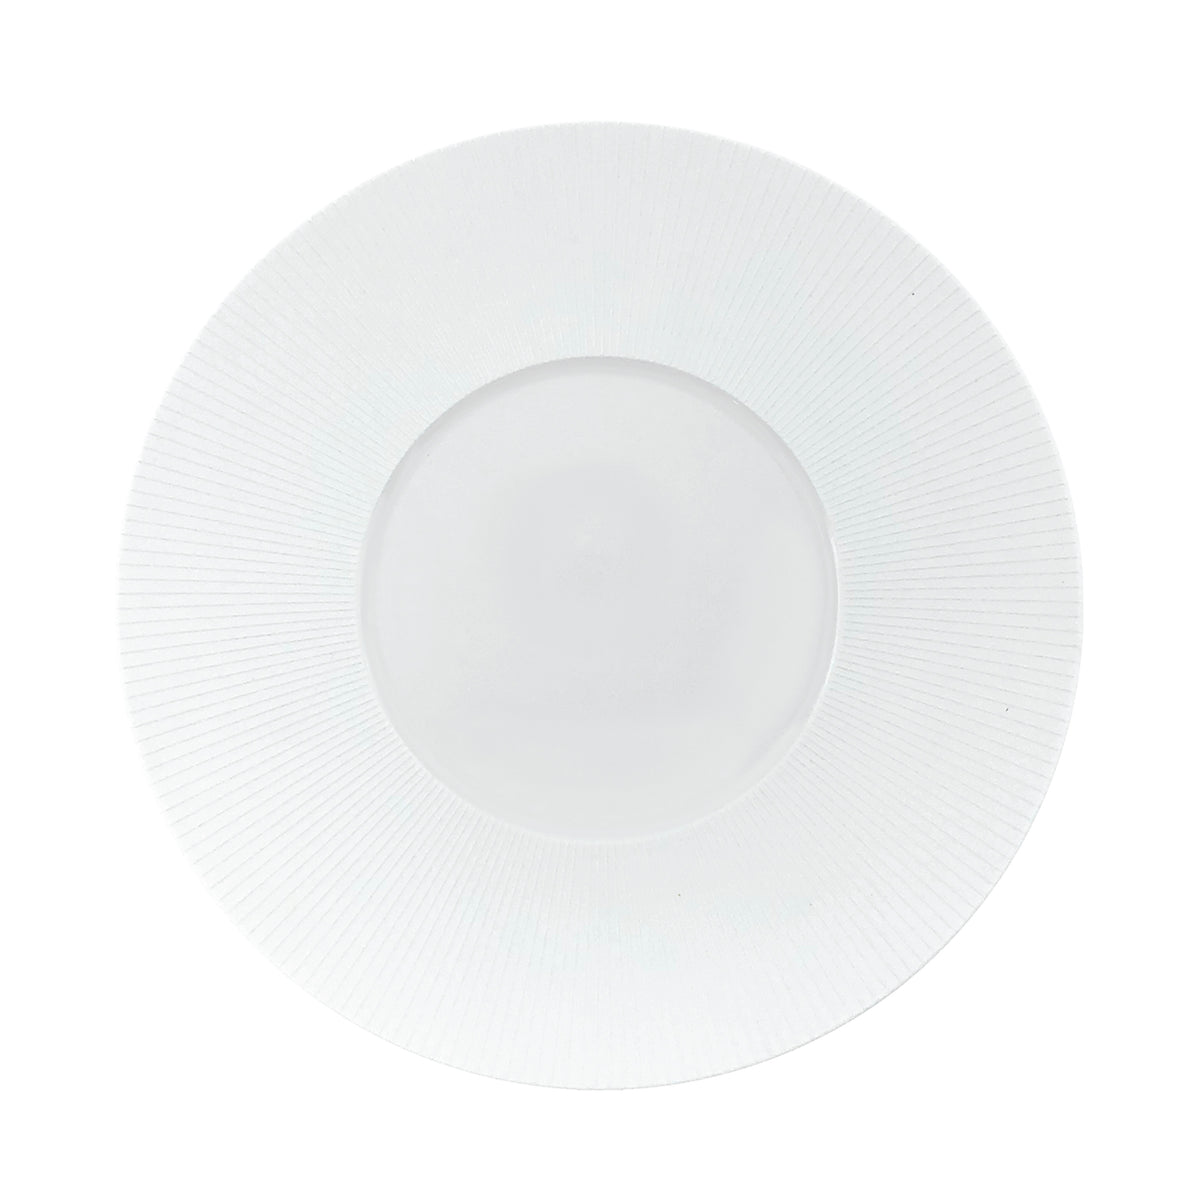 BOLERO Satin White - 29 cm plate